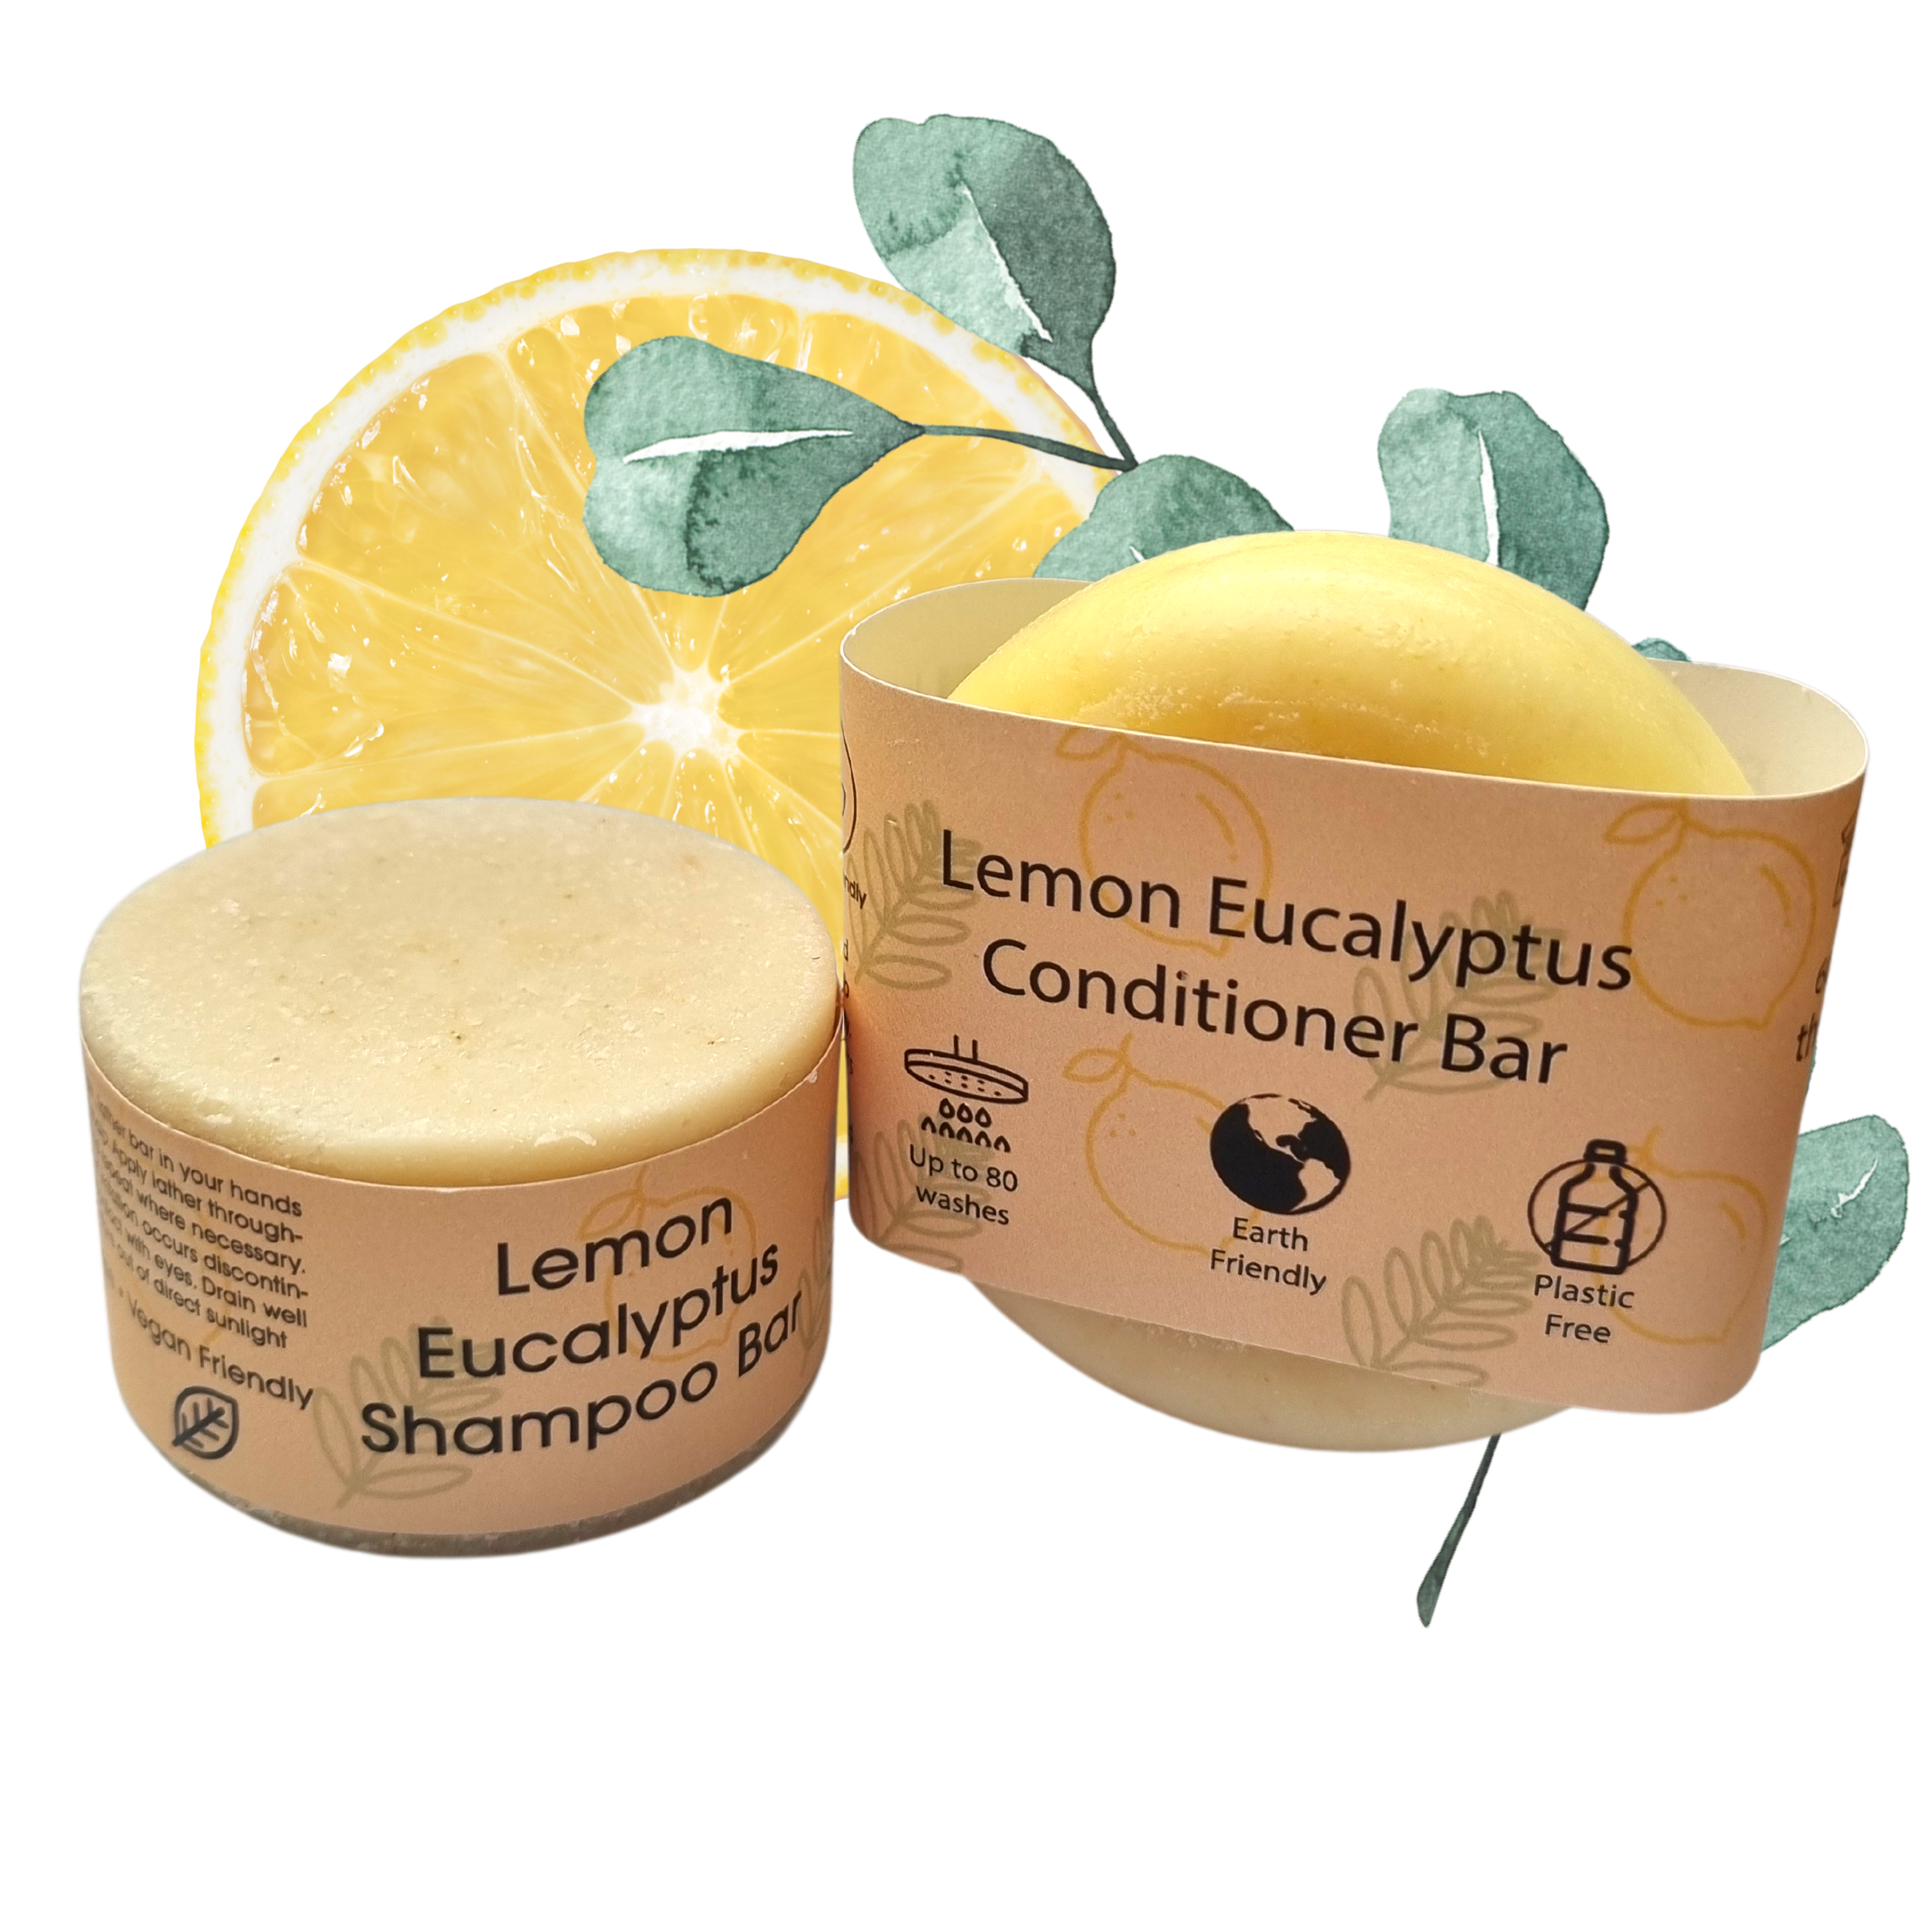 Lemon Eucalyptus Shampoo and Conditioner Bar set